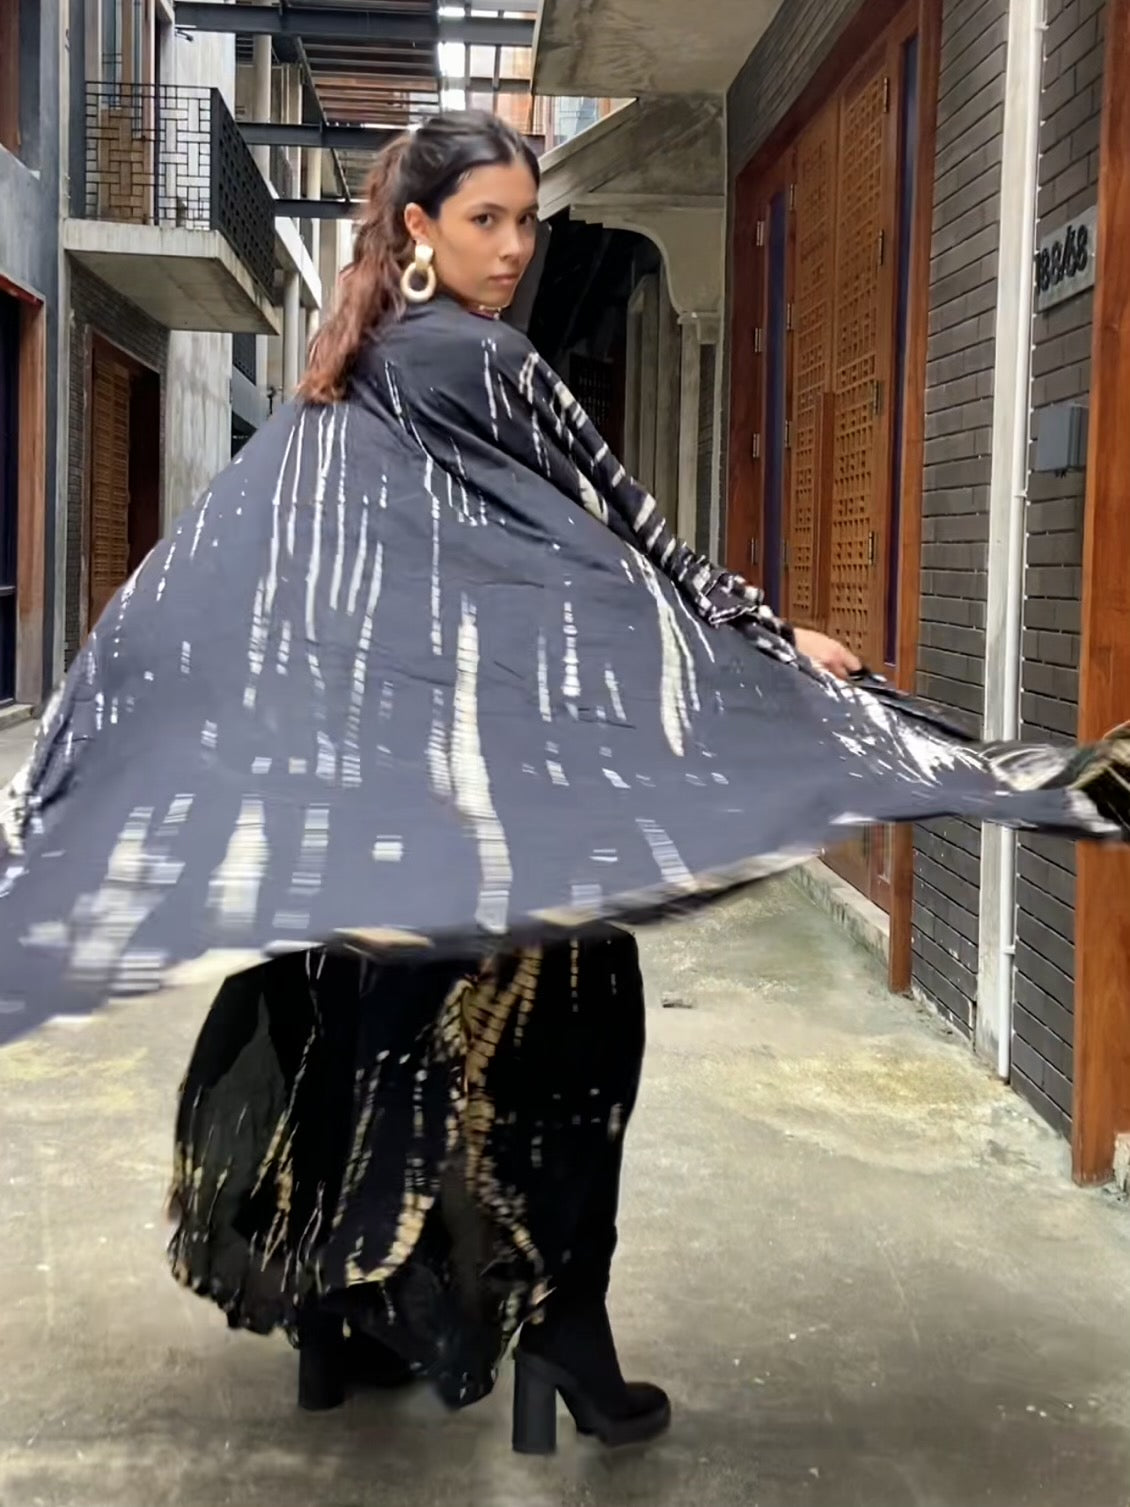 Maya Tie Dye Kaftan Kimono (Plus size) - Black